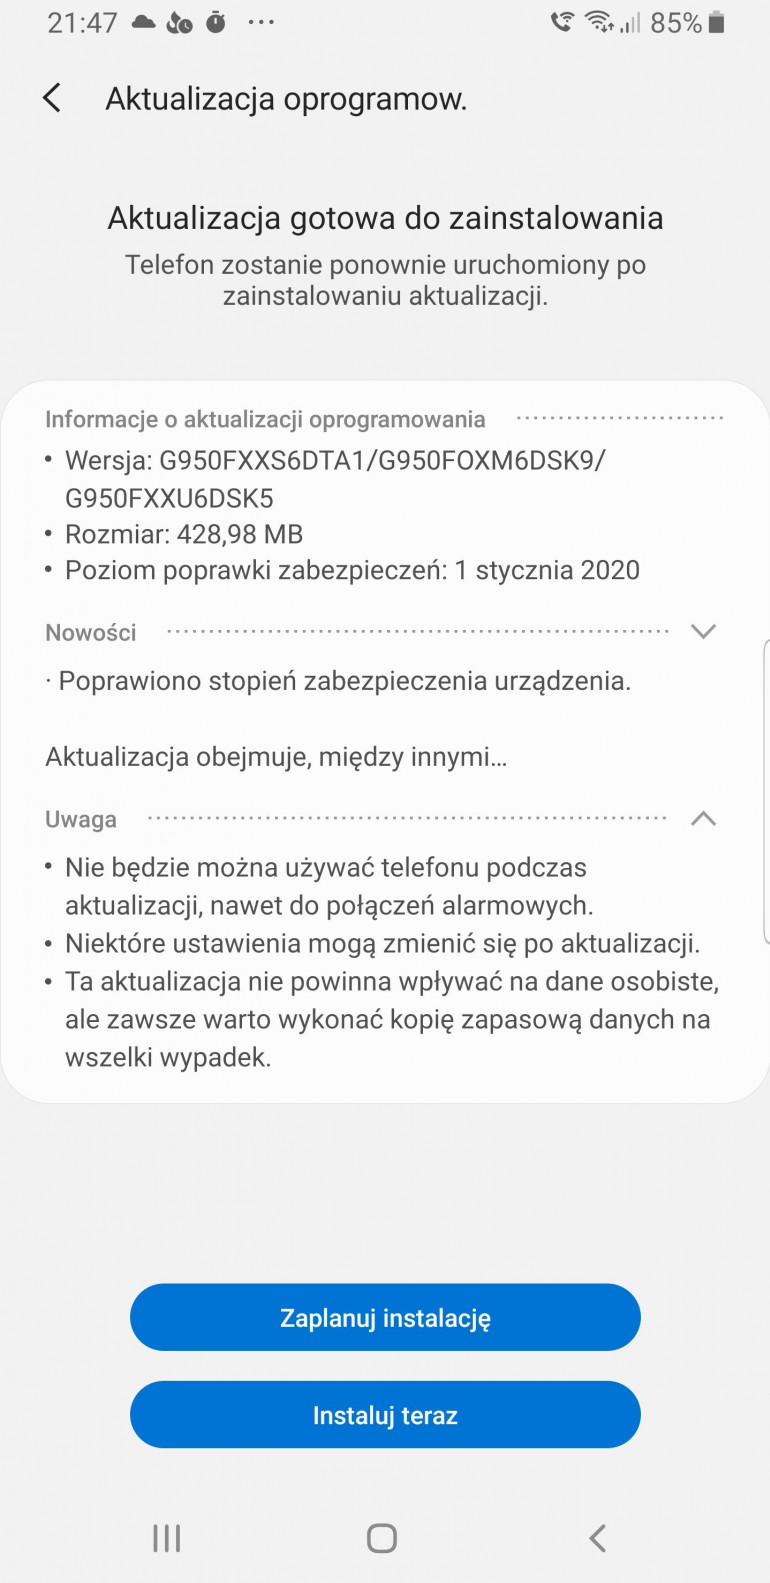 Польский Samsung Galaxy S8 / Galaxy S8 + получит очередное обновление системы